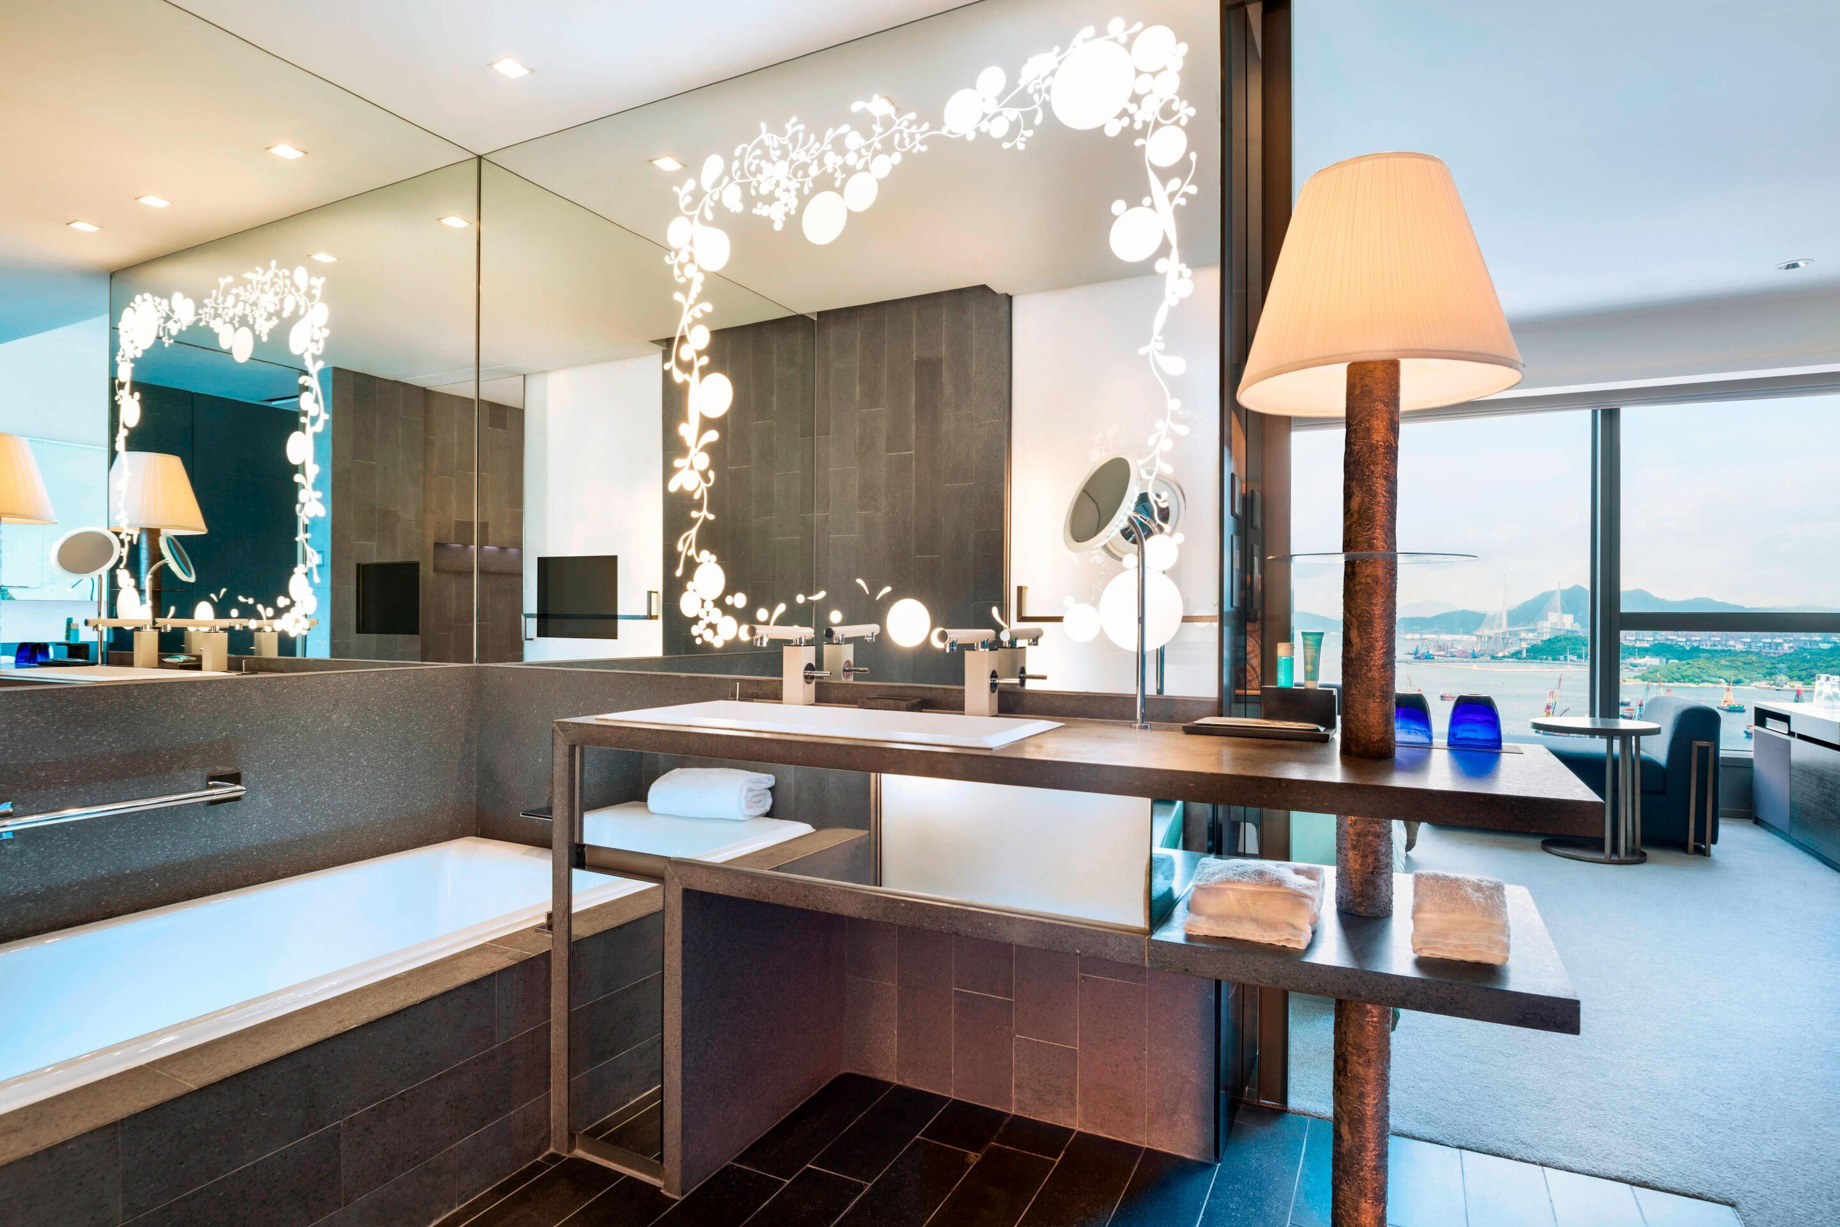 W Hong Kong Hotel – Hong Kong – Guest Room Bathroom Vanity